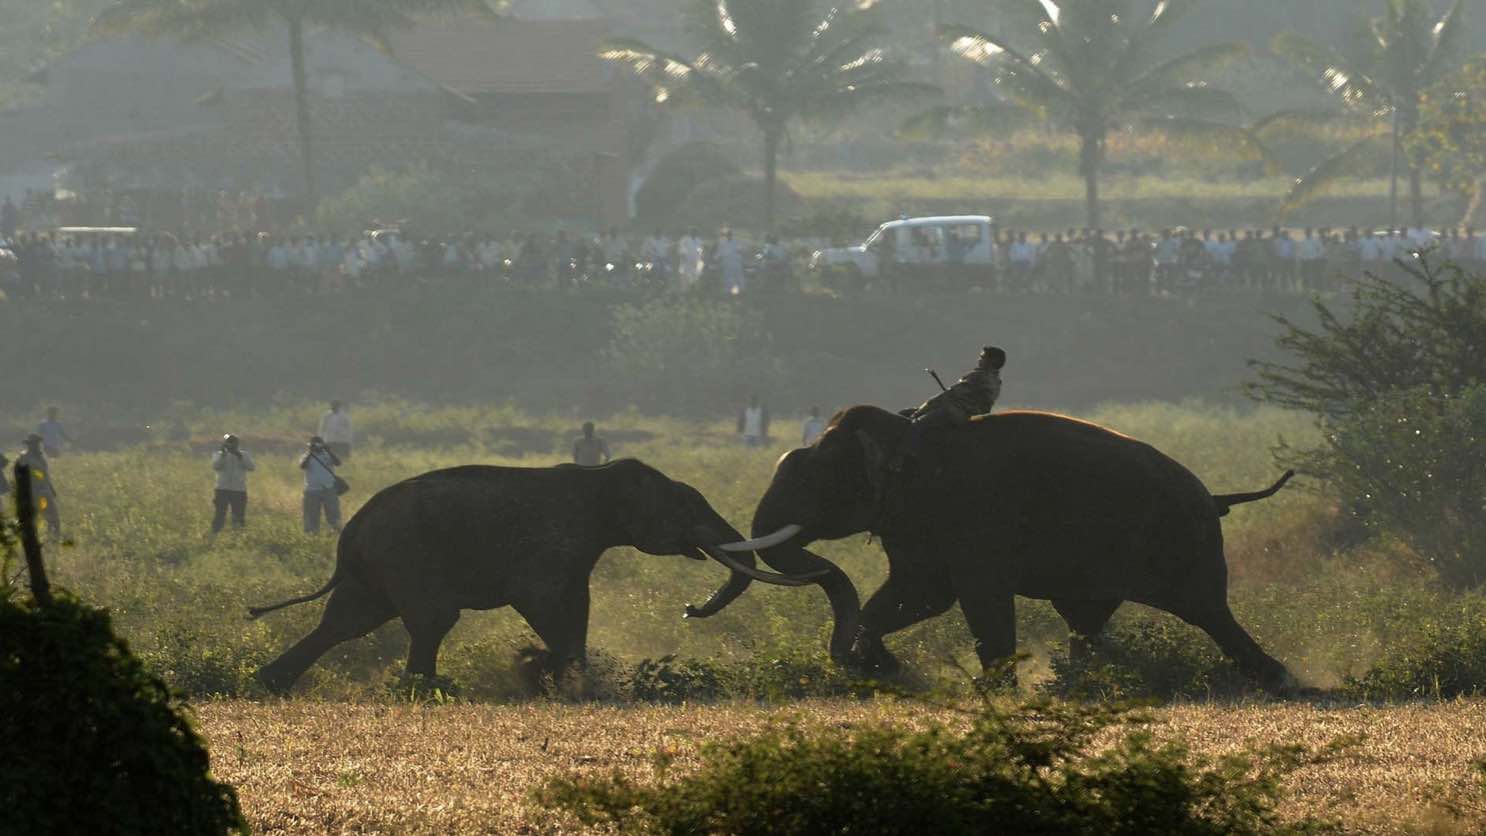 Foto de briga de elefantes é uma das vencedoras da categoria "Conservação" do concurso Nature inFocus